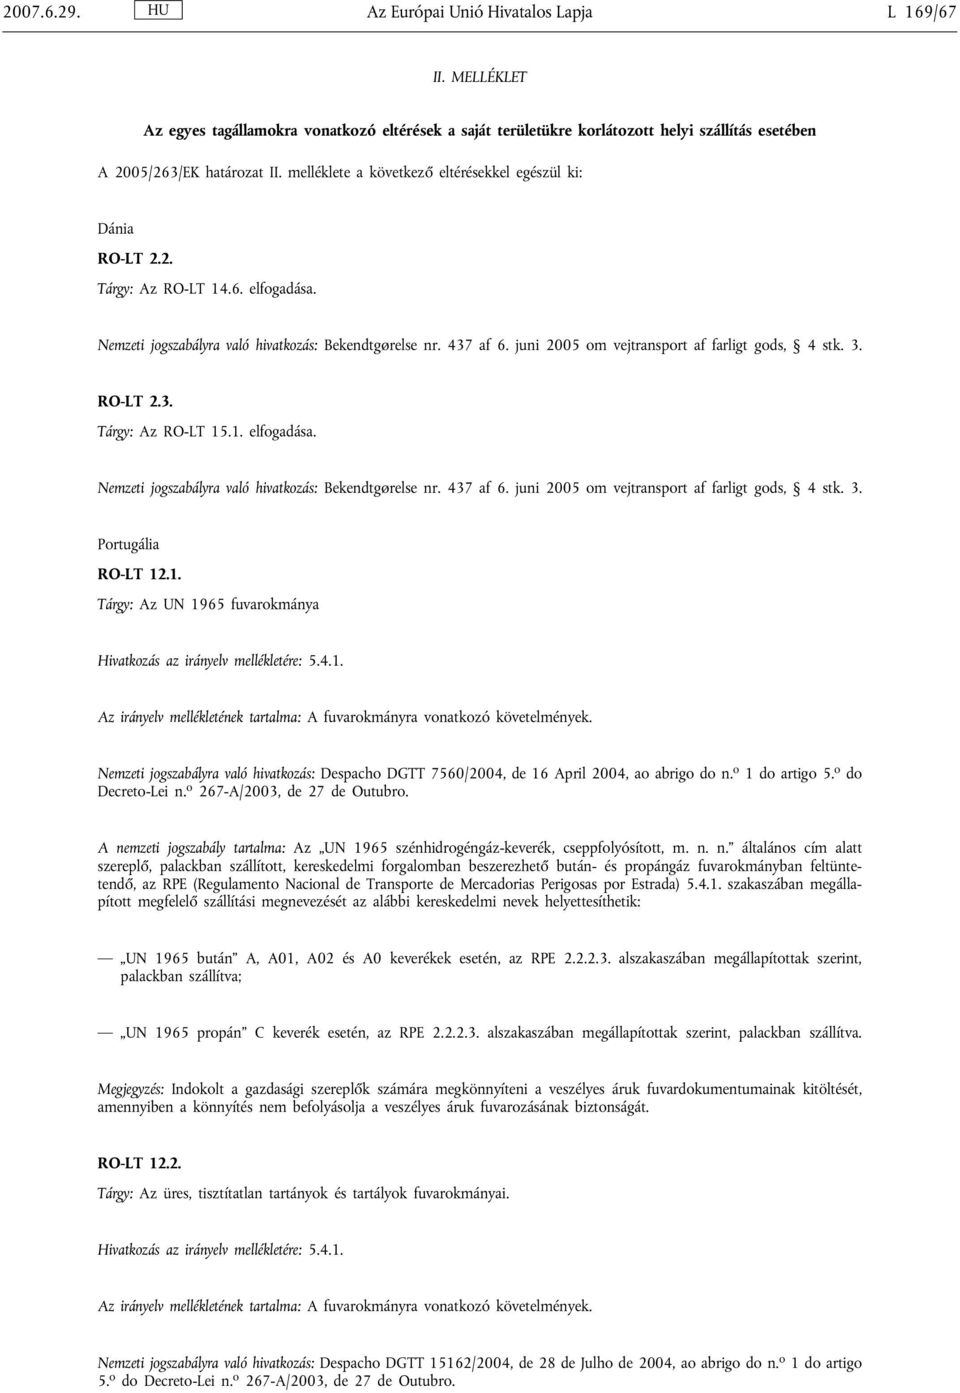 4.1. Az irányelv mellékletének tartalma: A fuvarokmányra vonatkozó követelmények. Nemzeti jogszabályra való hivatkozás: Despacho DGTT 7560/2004, de 16 April 2004, ao abrigo do n. o 1 do artigo 5.